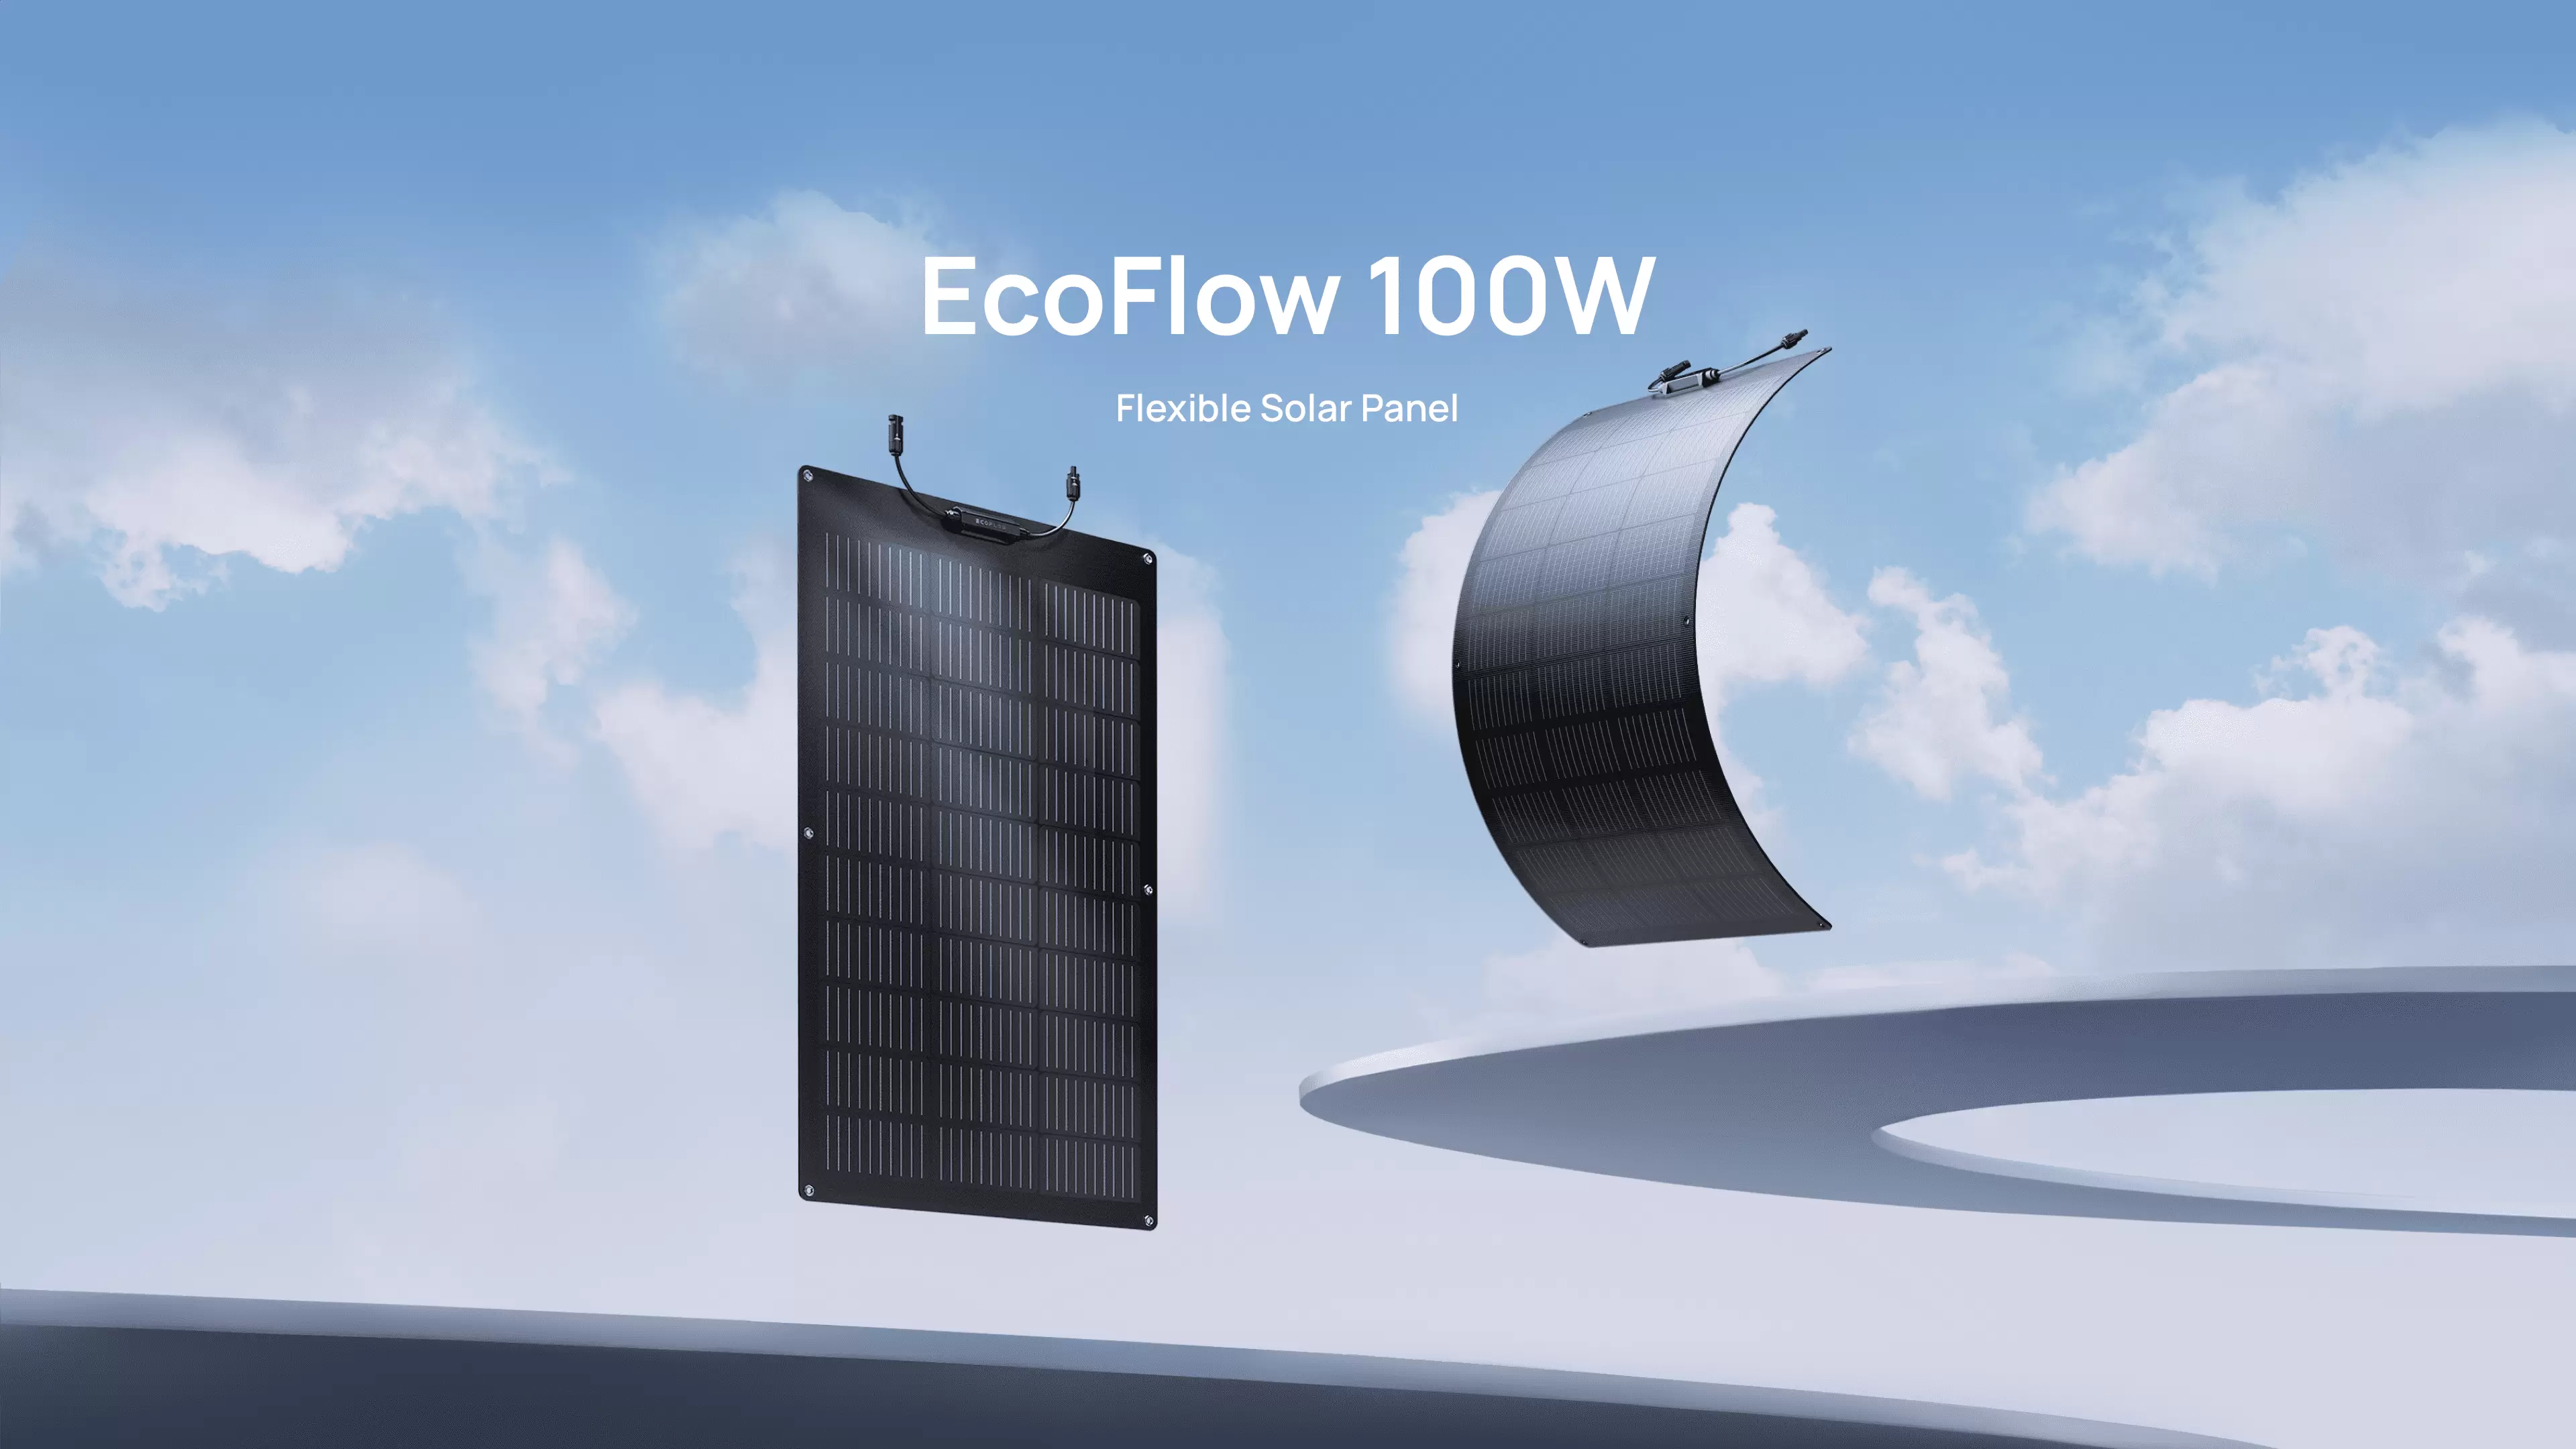 Гибкая солнечная панель EcoFlow 100W купить в минске.png